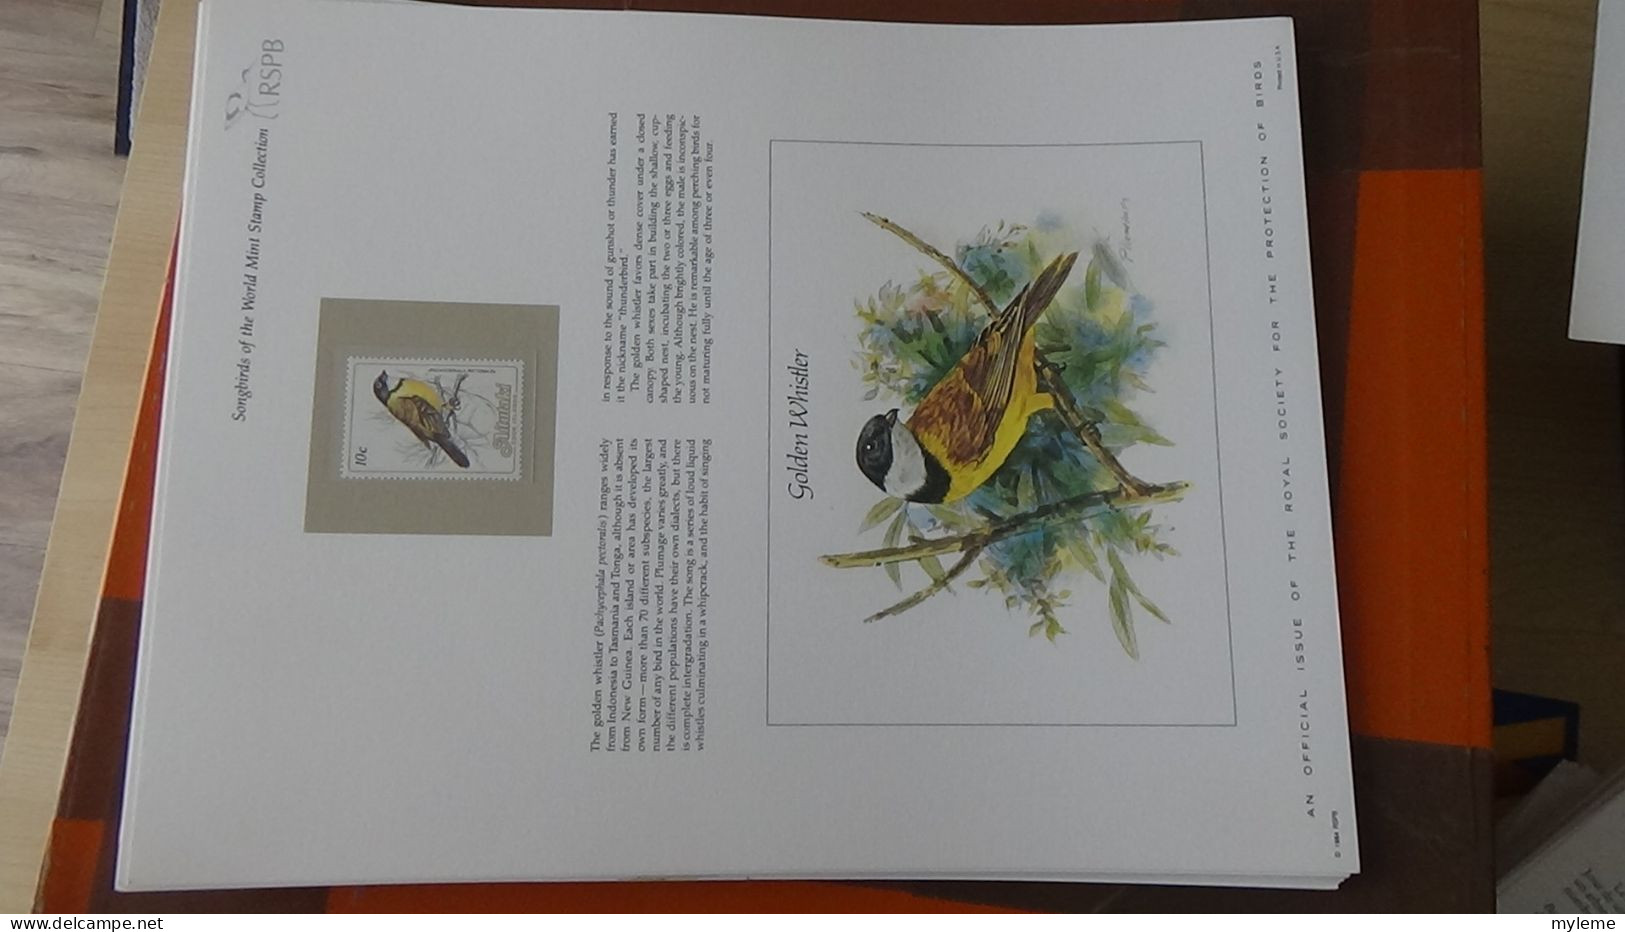 BF73 Bel ensemble de documents avec timbres ** sur les oiseaux + coffret A saisir !!!